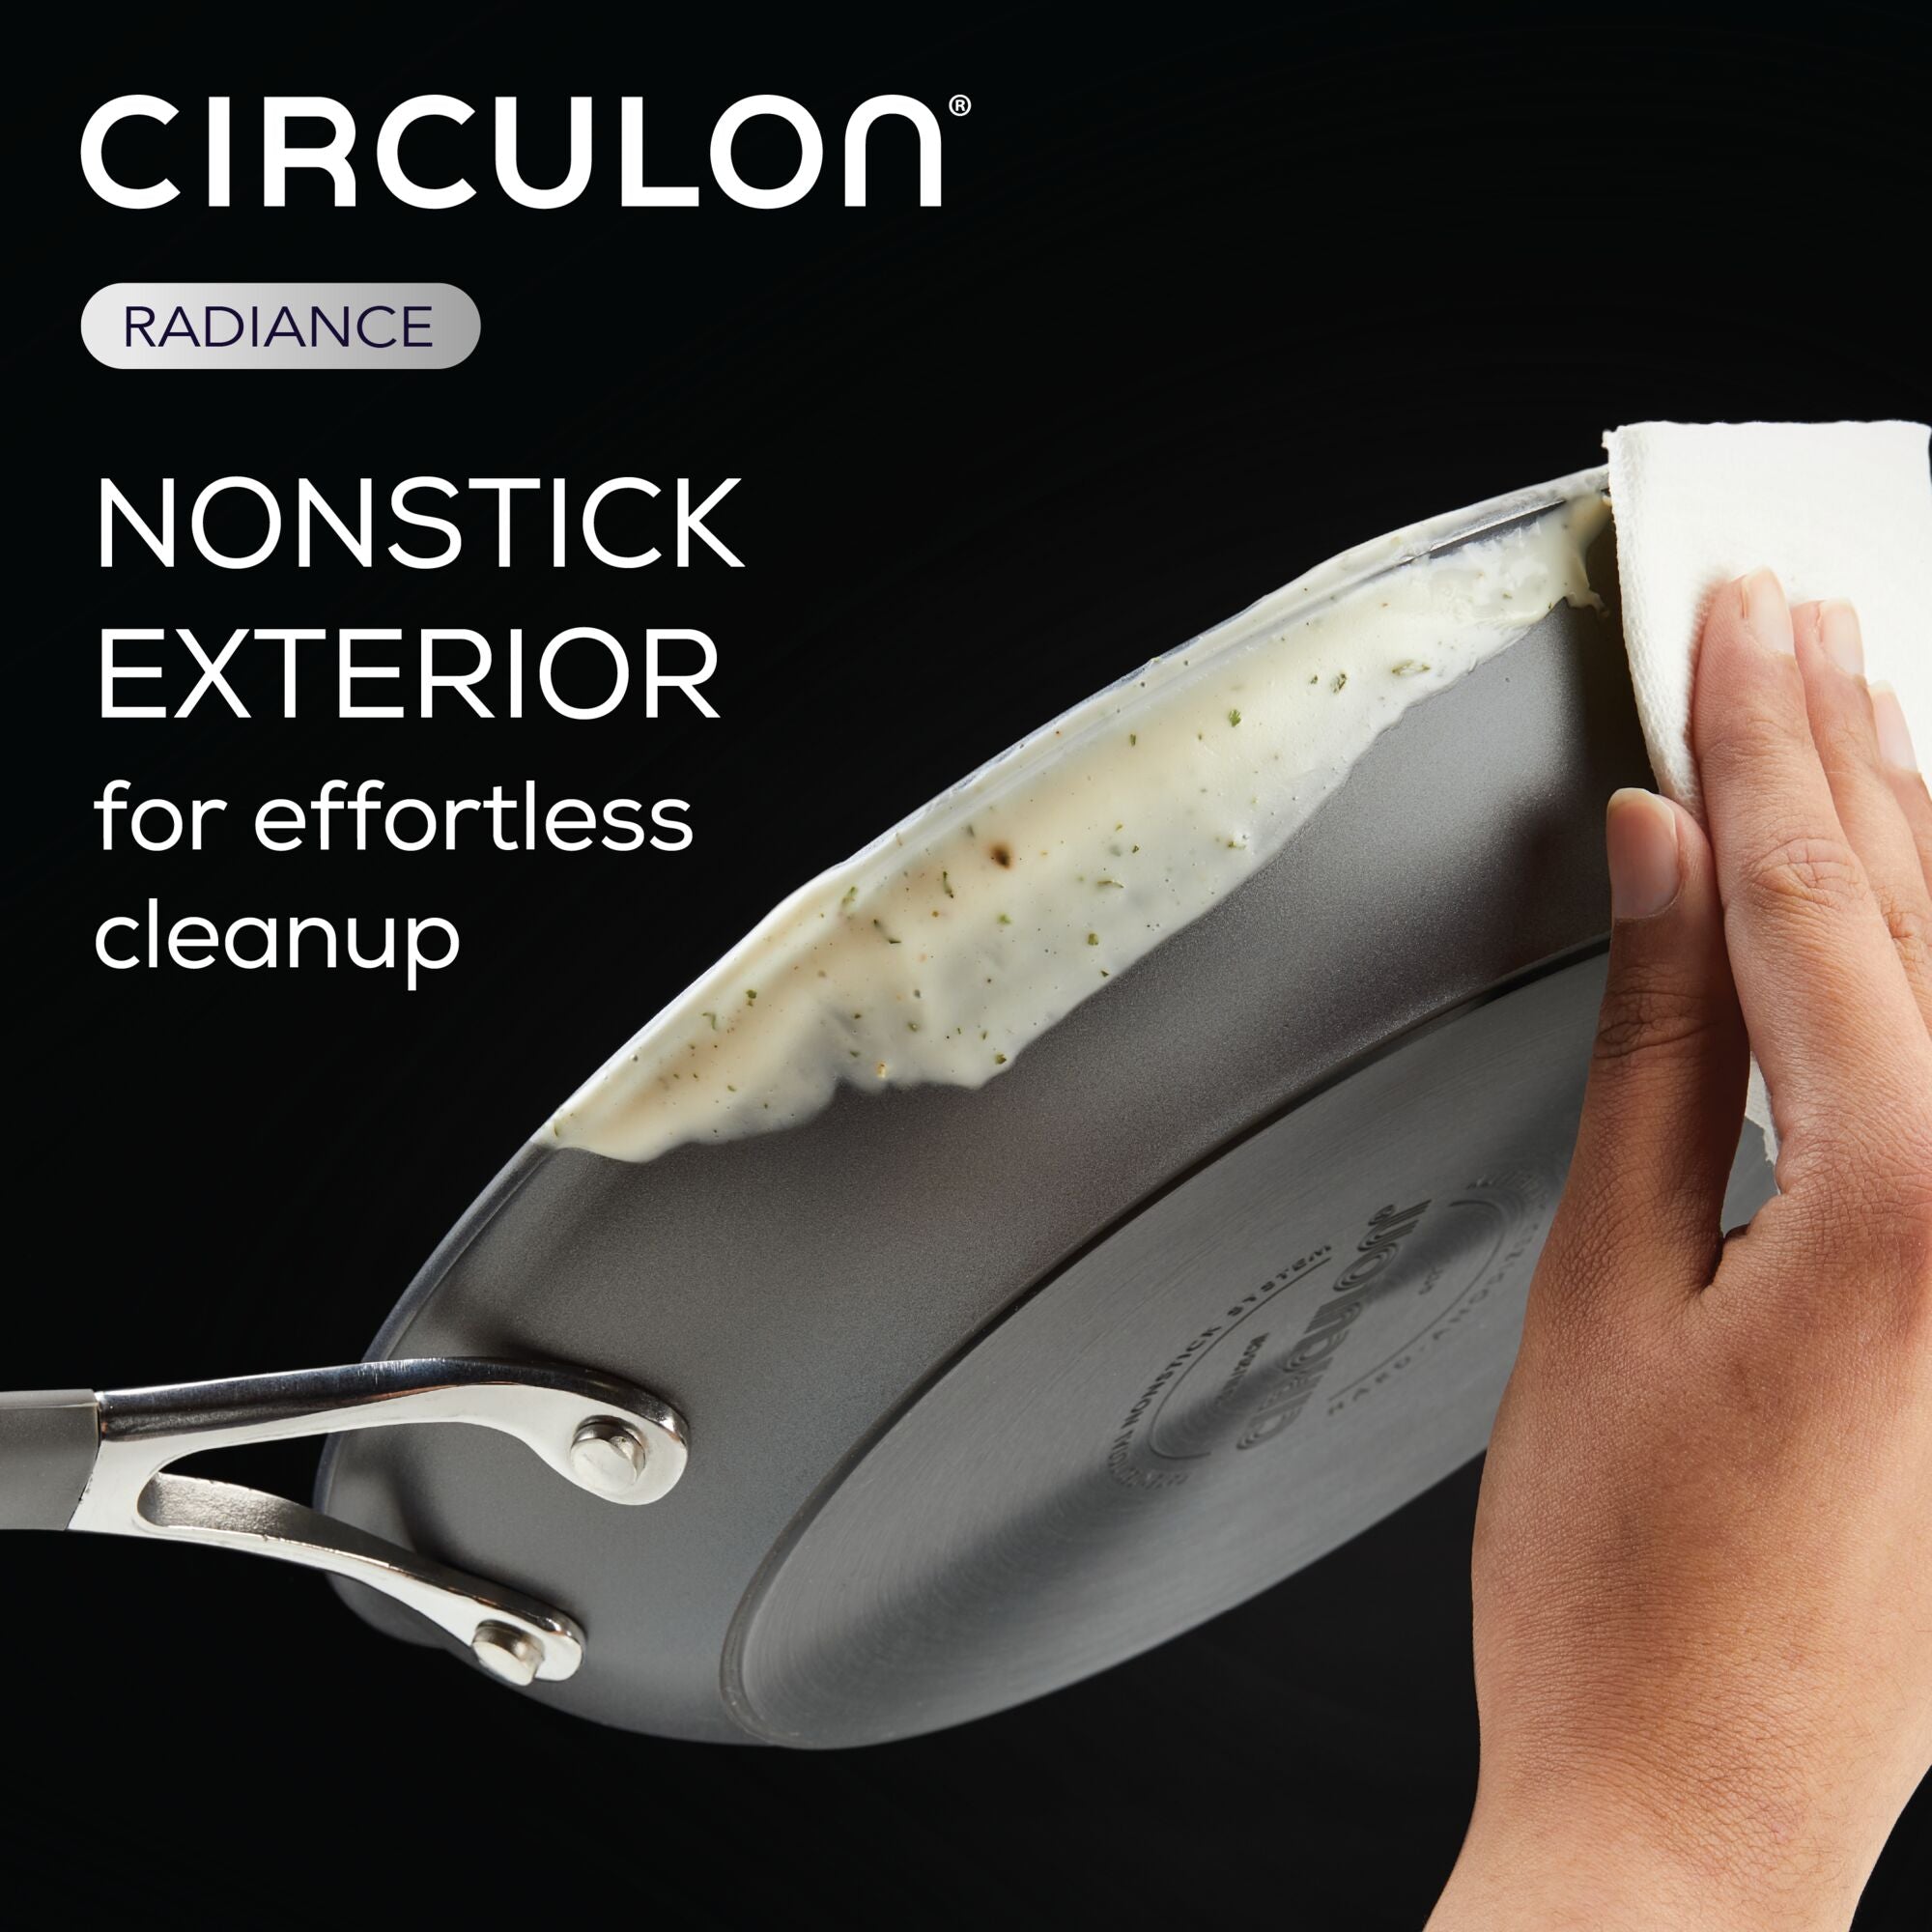 Circulon Premier Professional 10-Piece Non-Stick Cookware Set – RJP  Unlimited